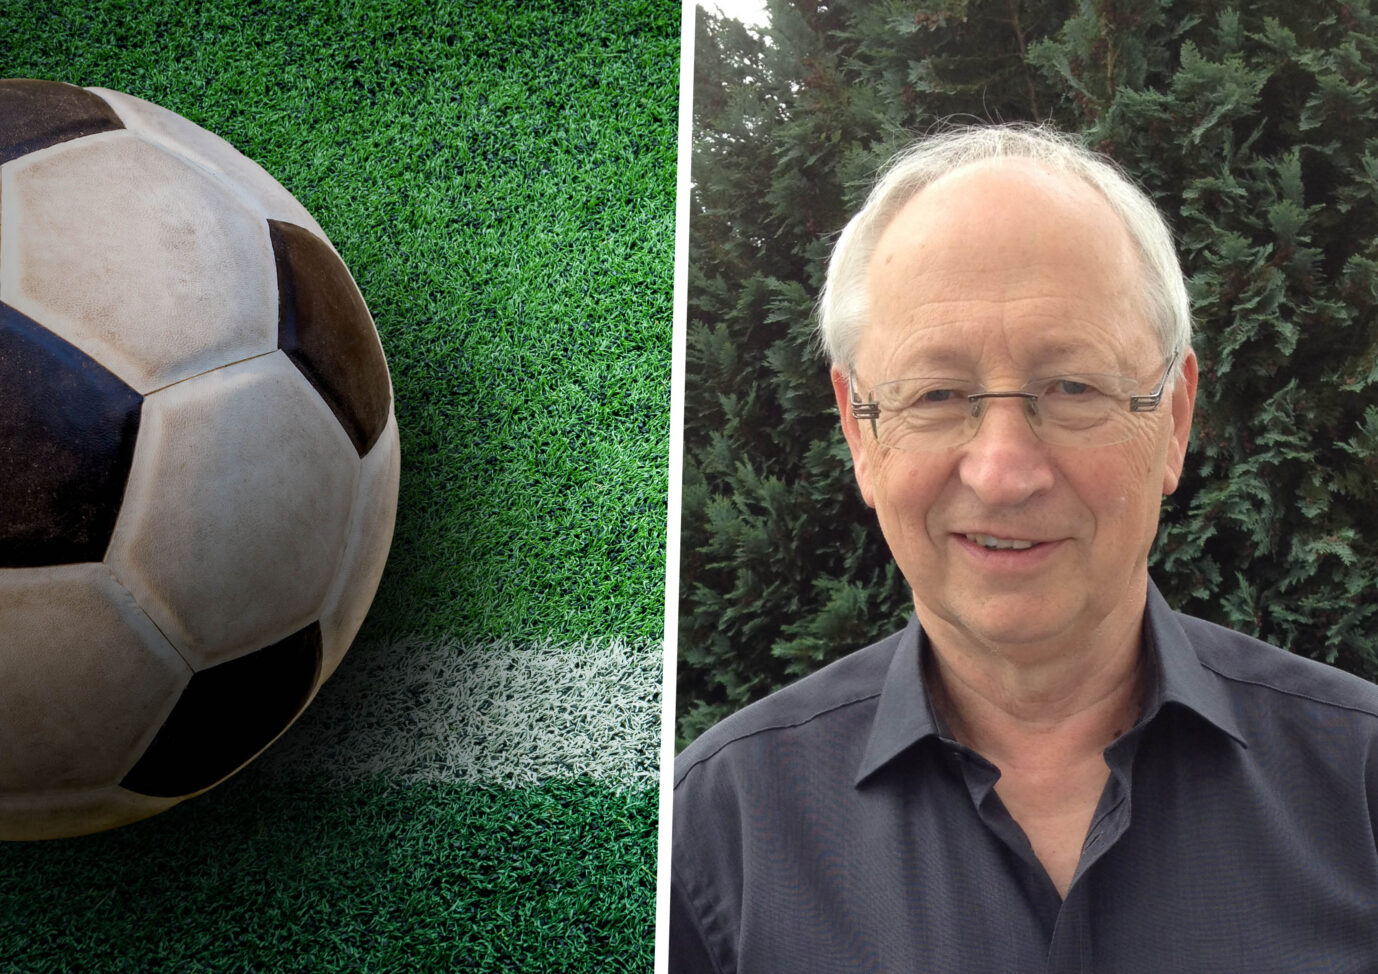 Auf der Collage befindet sich ein Fußball auf dem Rasen. Rechts davon Historiker Günther Scholdt. (Themenbild/Collage)